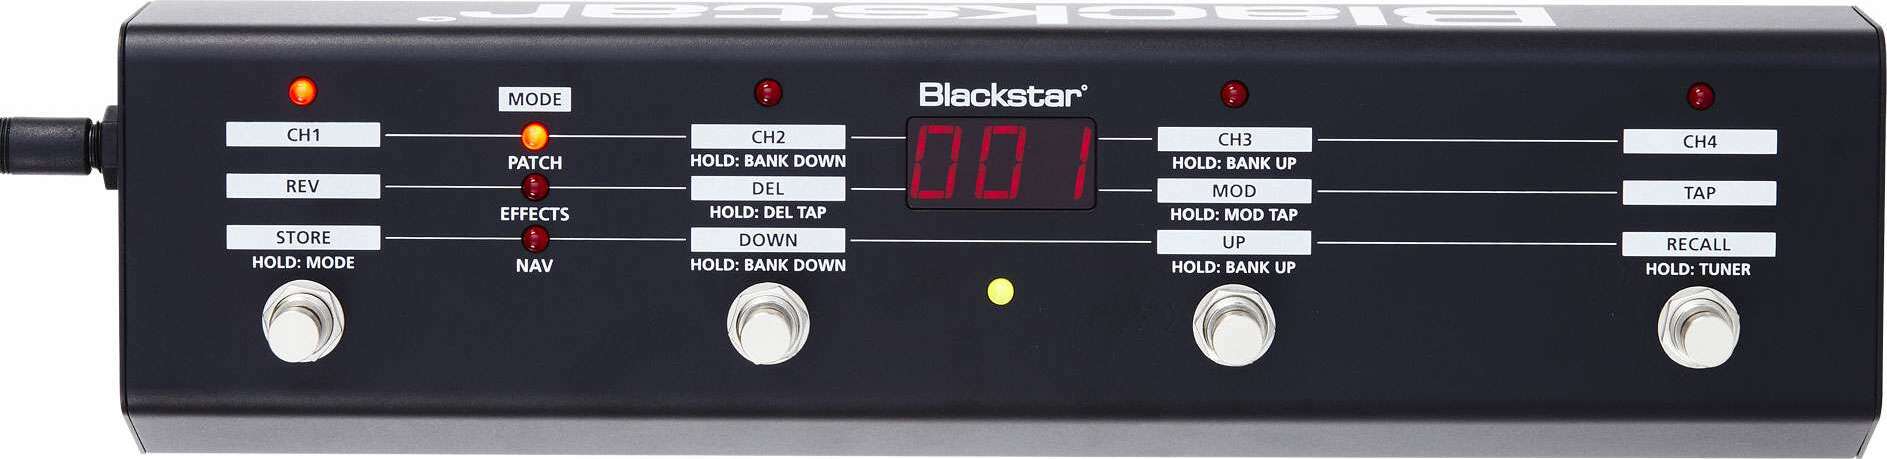 Blackstar Fs10 - Voetschakelaar voor versterker - Main picture